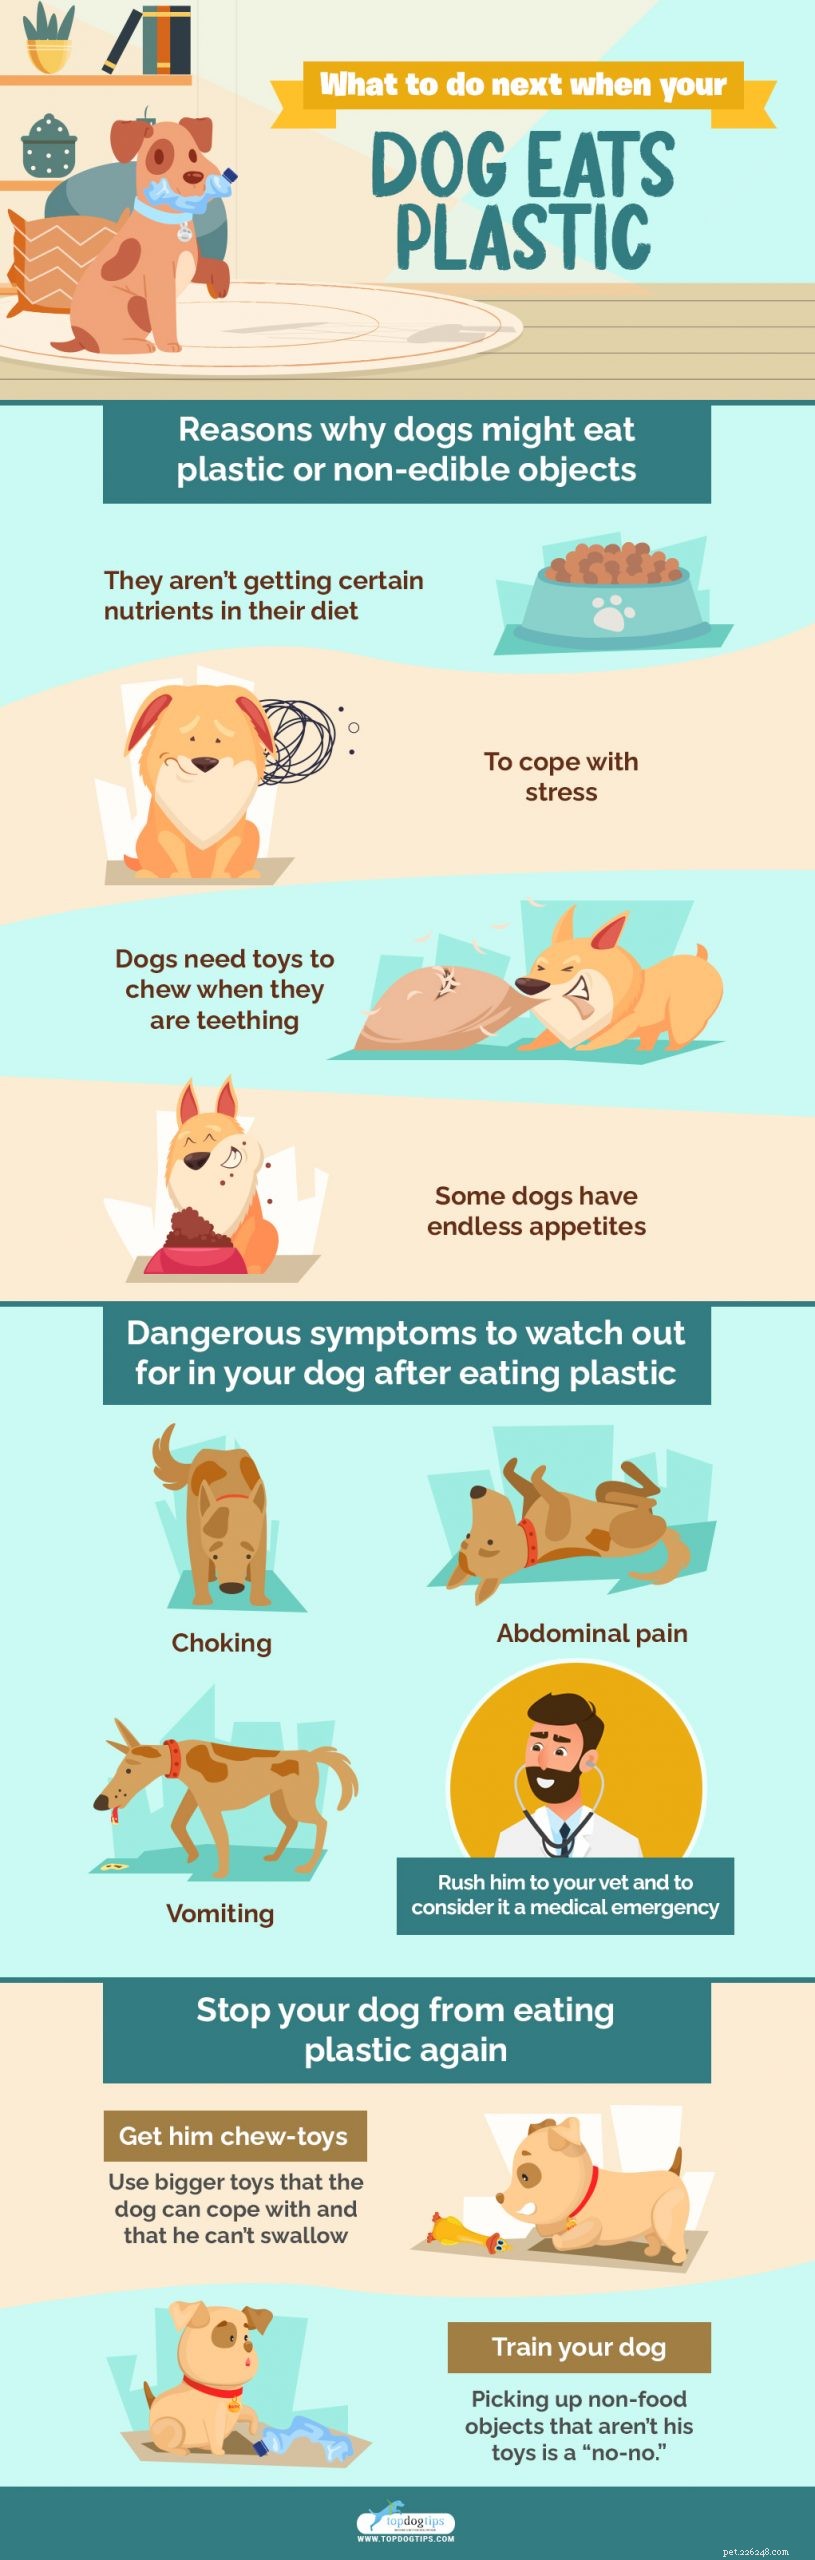 Il tuo cane ha mangiato plastica? Ecco cosa fare dopo